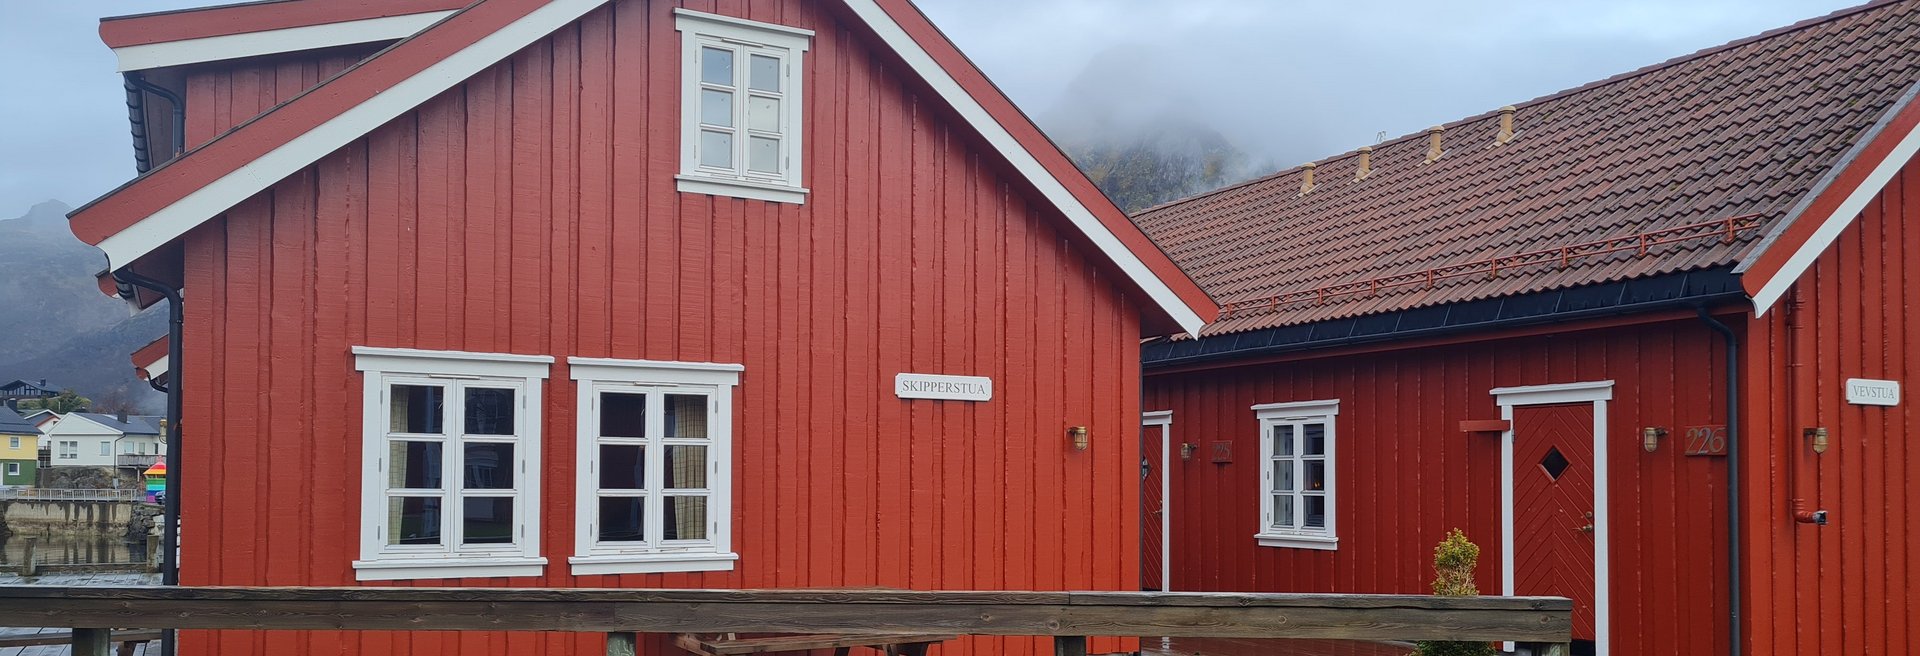 Ansicht eines typisch norwegischen Fischerdorfes